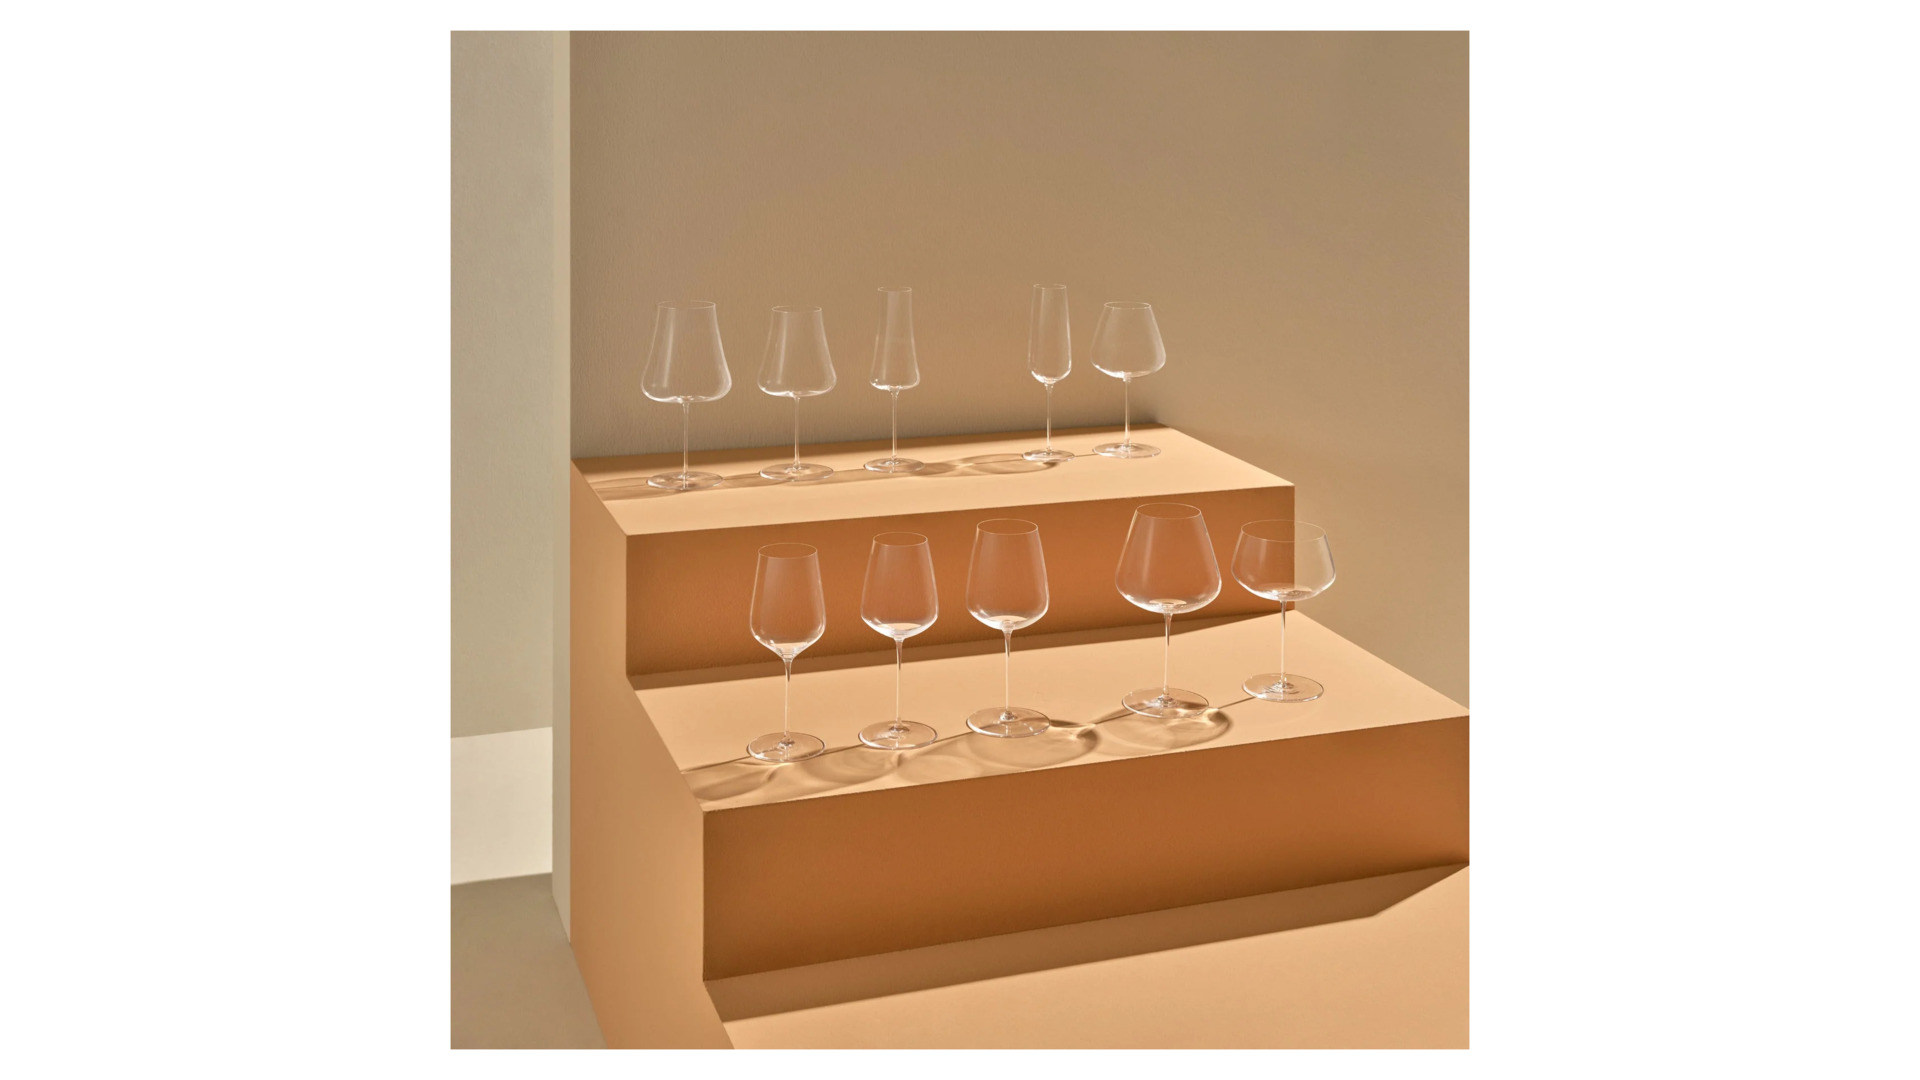 Бокал для белого вина Nude Glass Невидимая ножка Вертиго 450 мл, стекло хрустальное